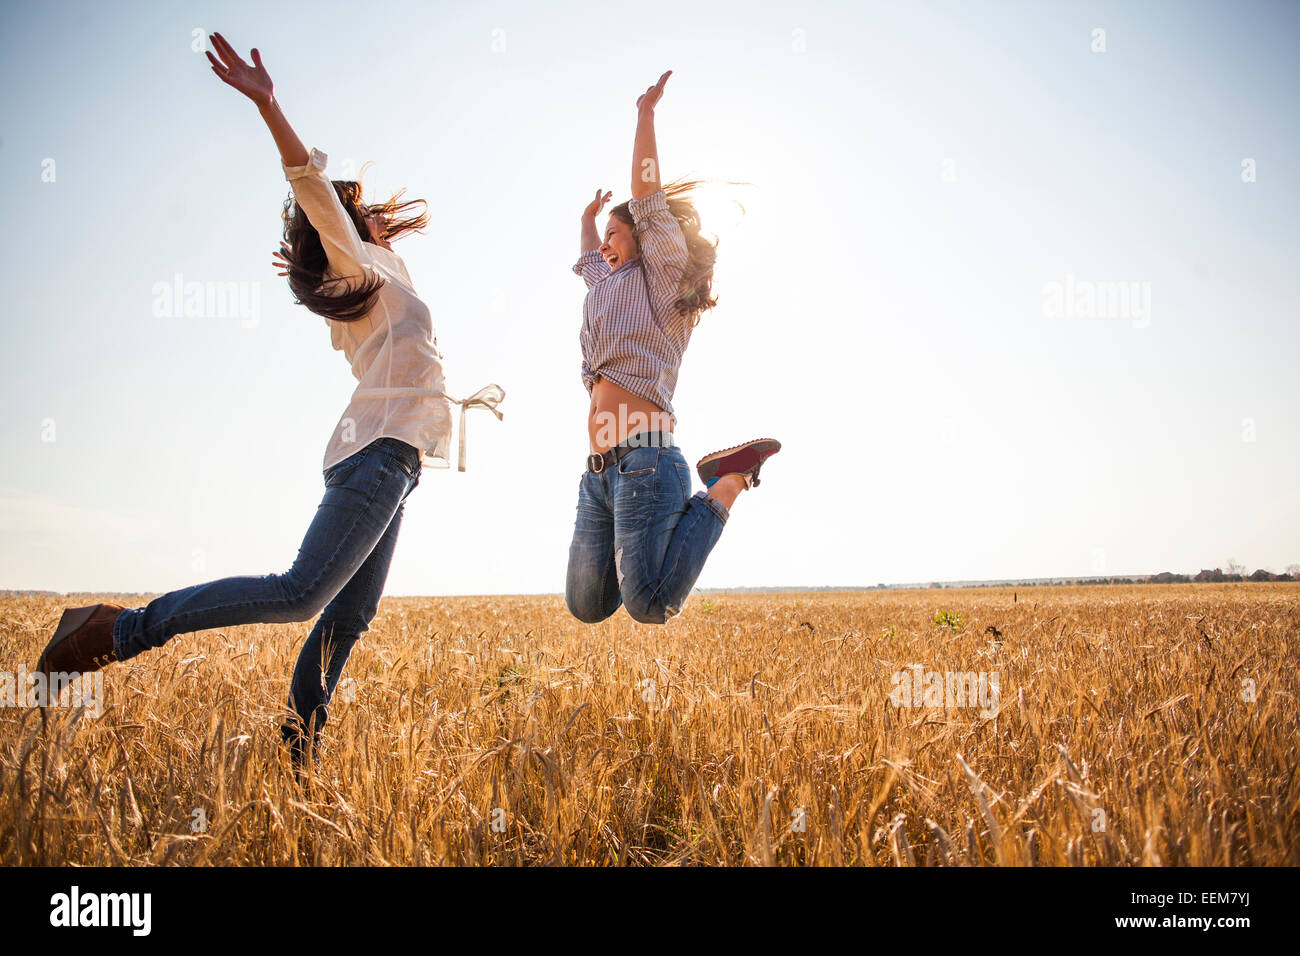 Les femmes de race blanche sauter de joie in rural field Banque D'Images